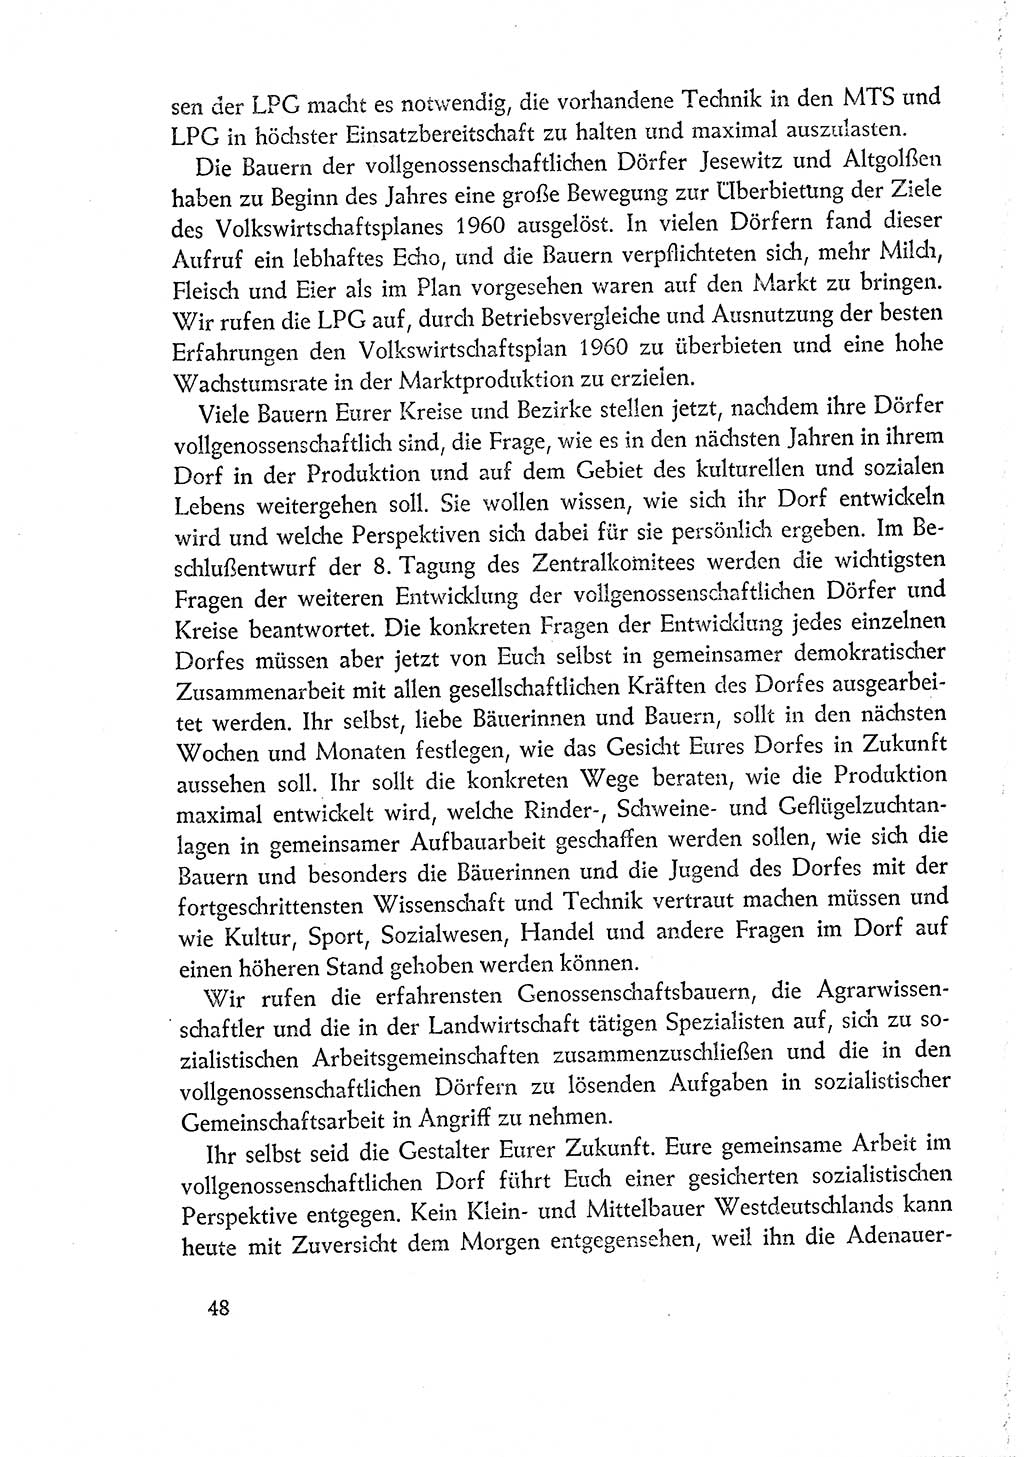 Dokumente der Sozialistischen Einheitspartei Deutschlands (SED) [Deutsche Demokratische Republik (DDR)] 1960-1961, Seite 48 (Dok. SED DDR 1960-1961, S. 48)